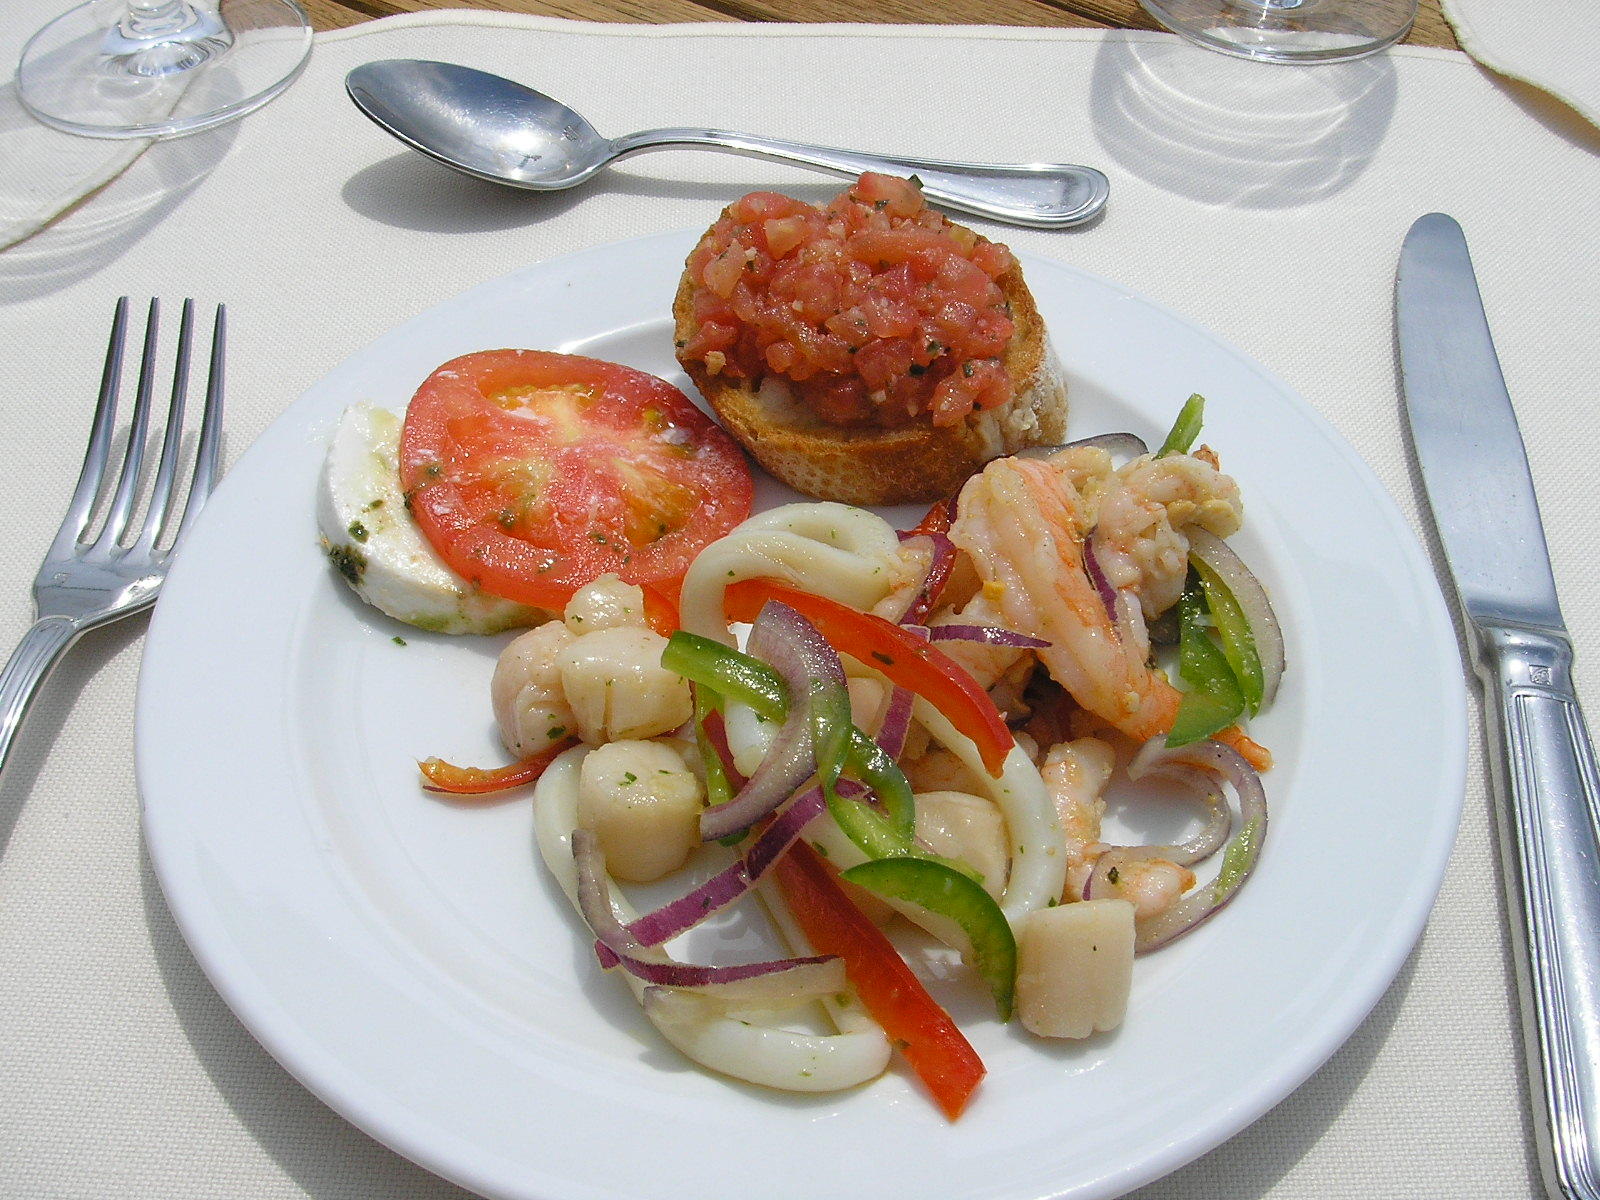 A great Mediterranean lunch